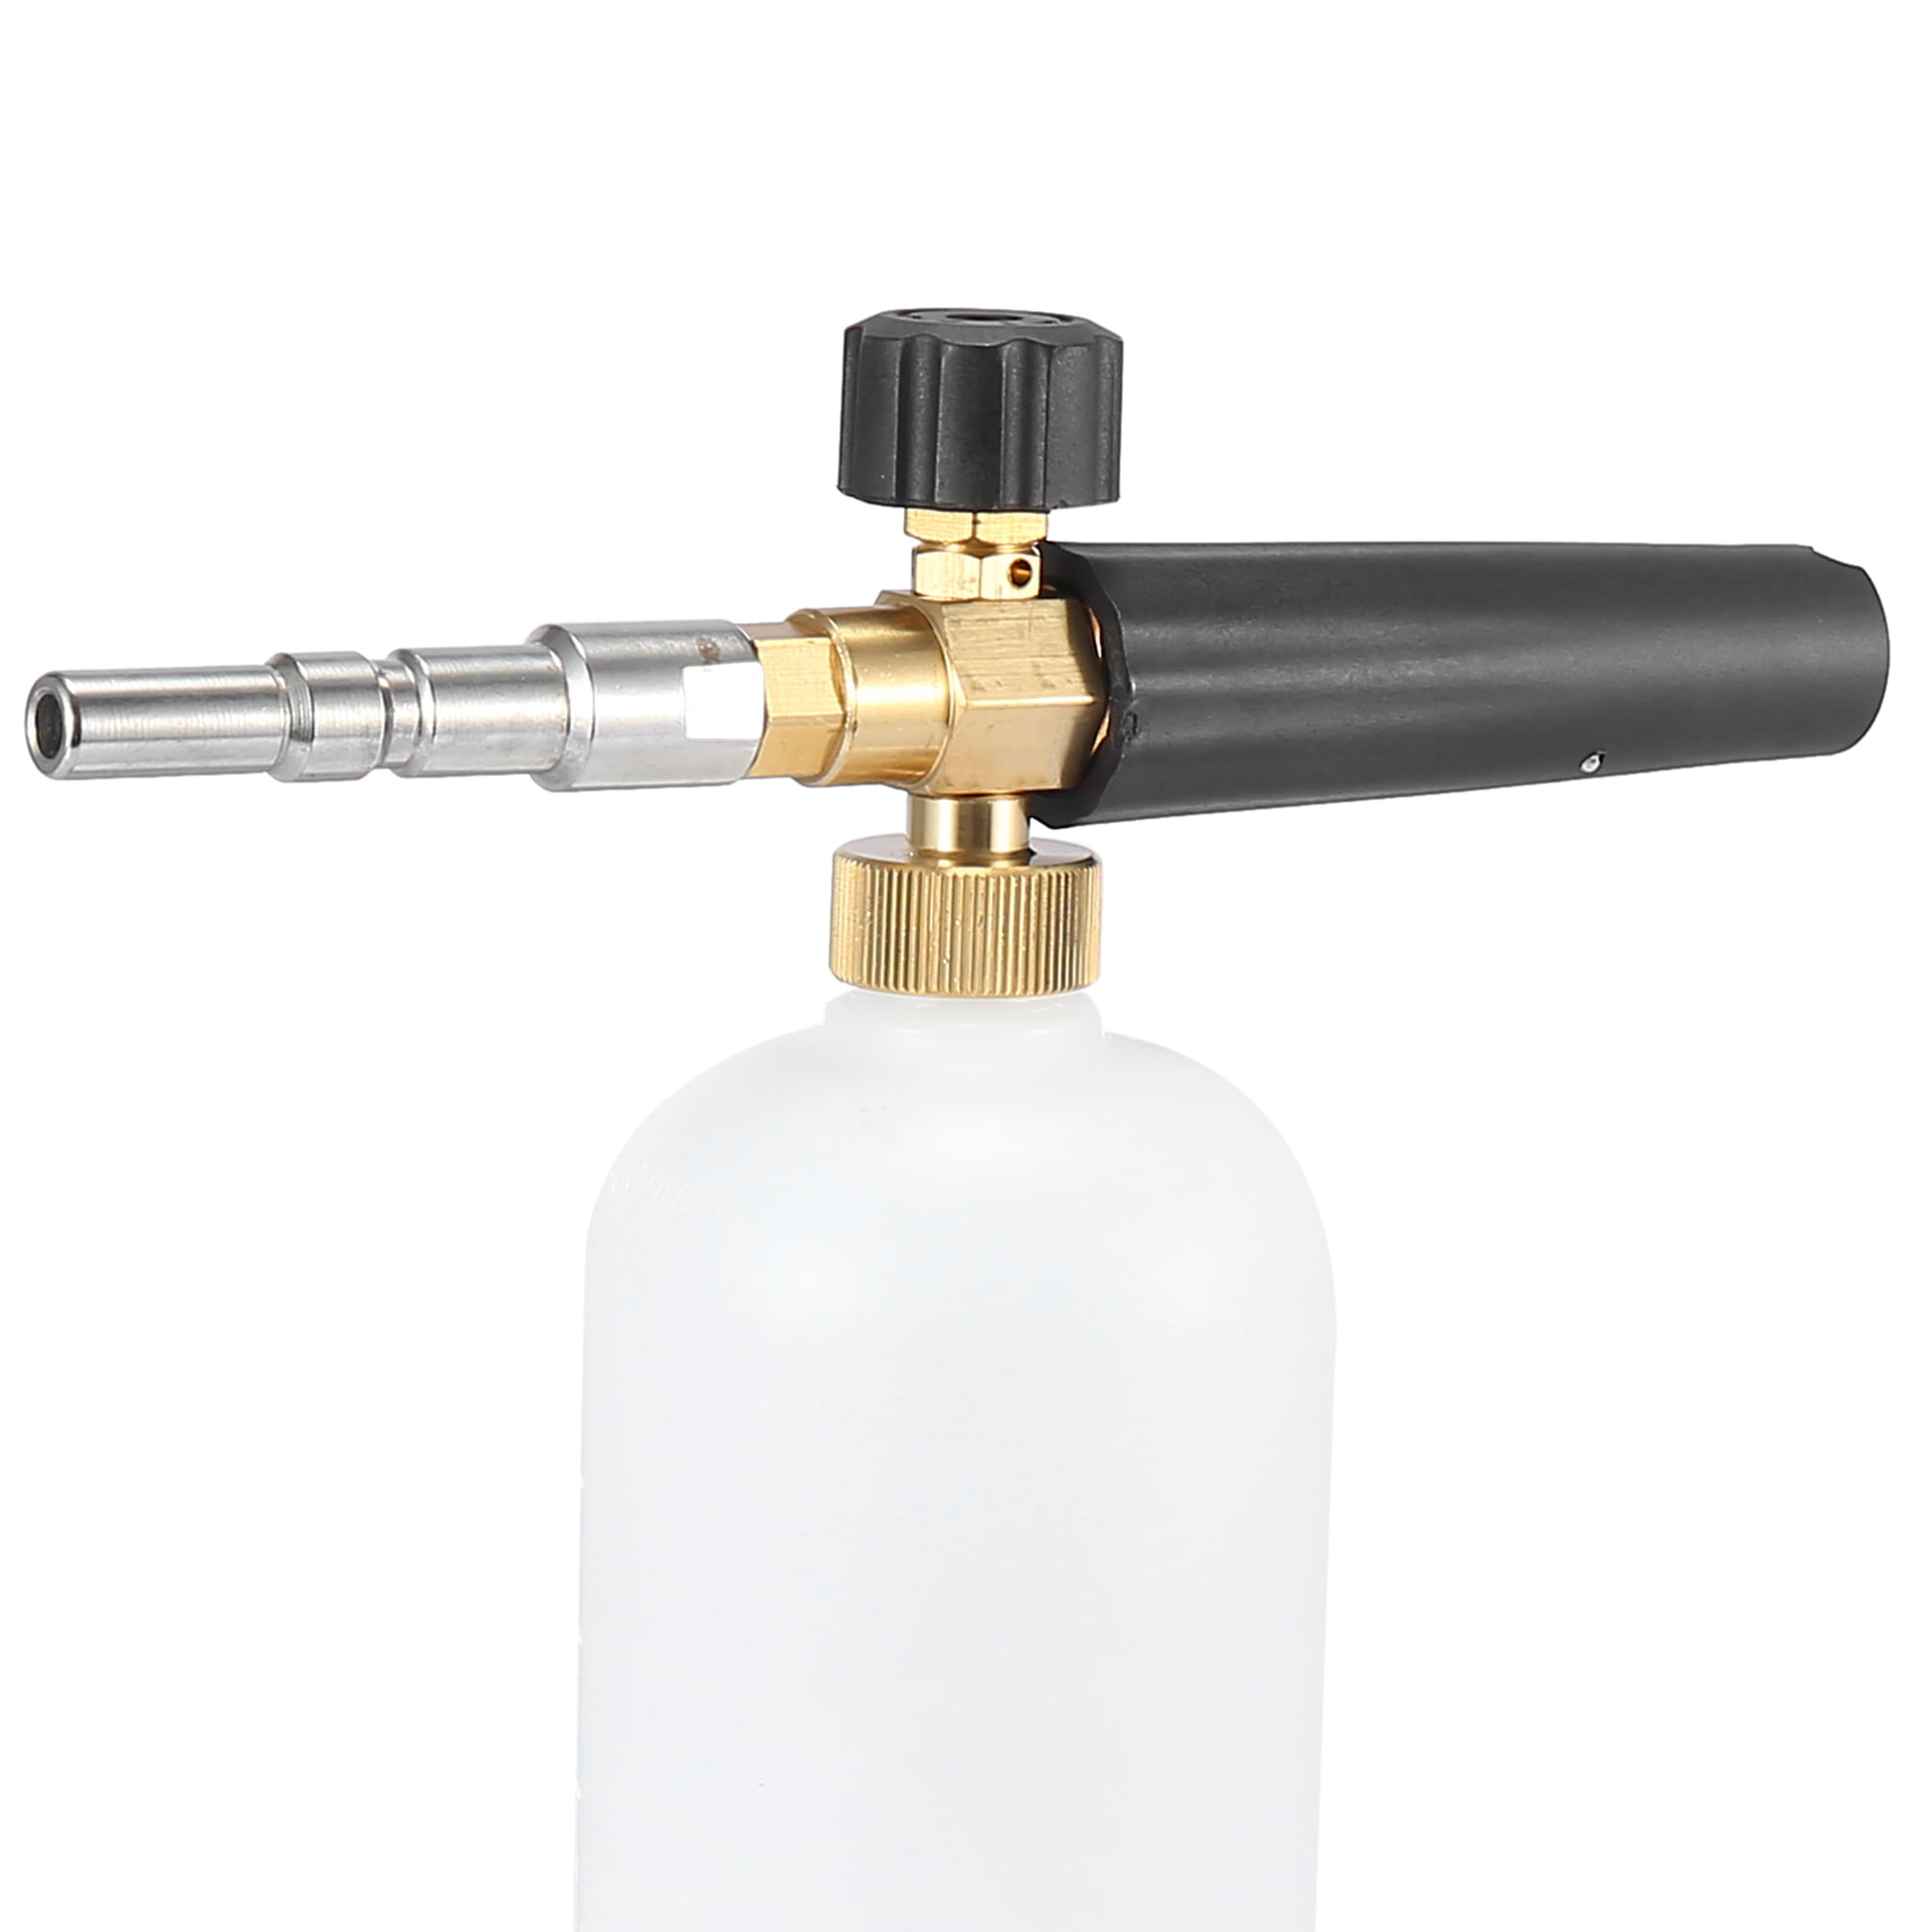 Pressure Washer Lance Extension M22 Karcher & Nilfisk Hi & Low Adjustable Nozzle 